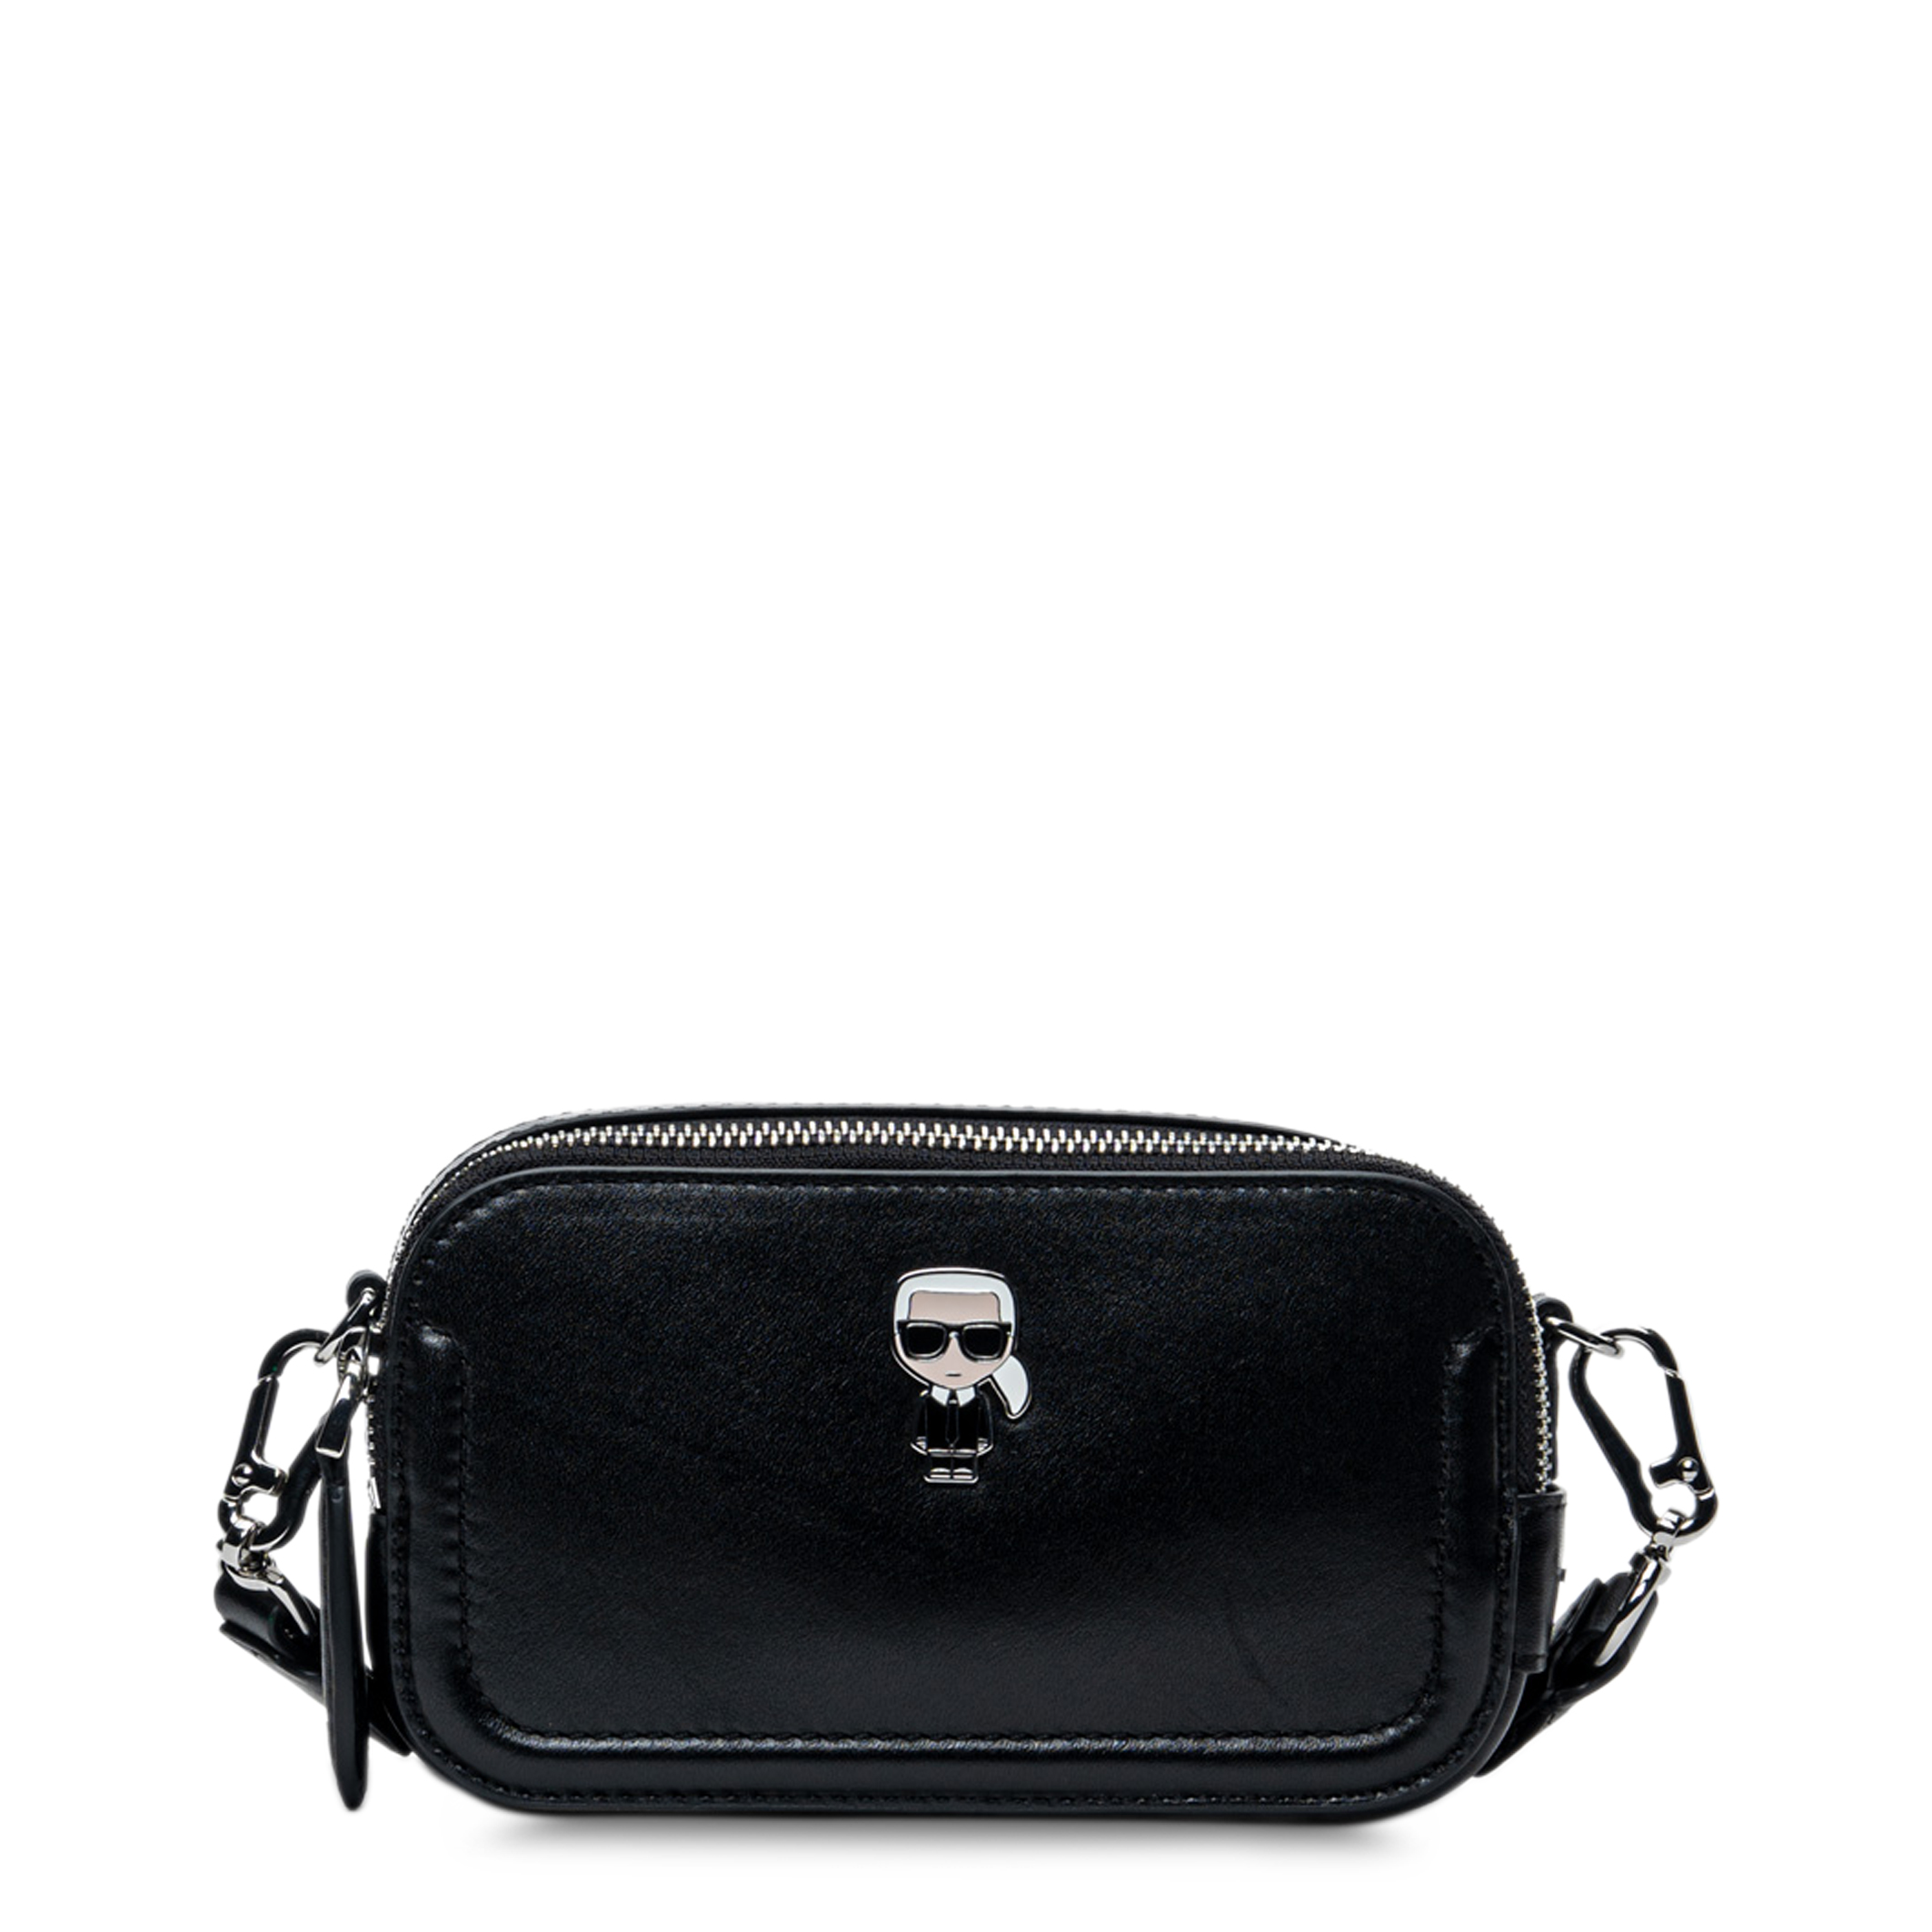 Karl Lagerfeld Women Crossbody Bags 215W3054 Black